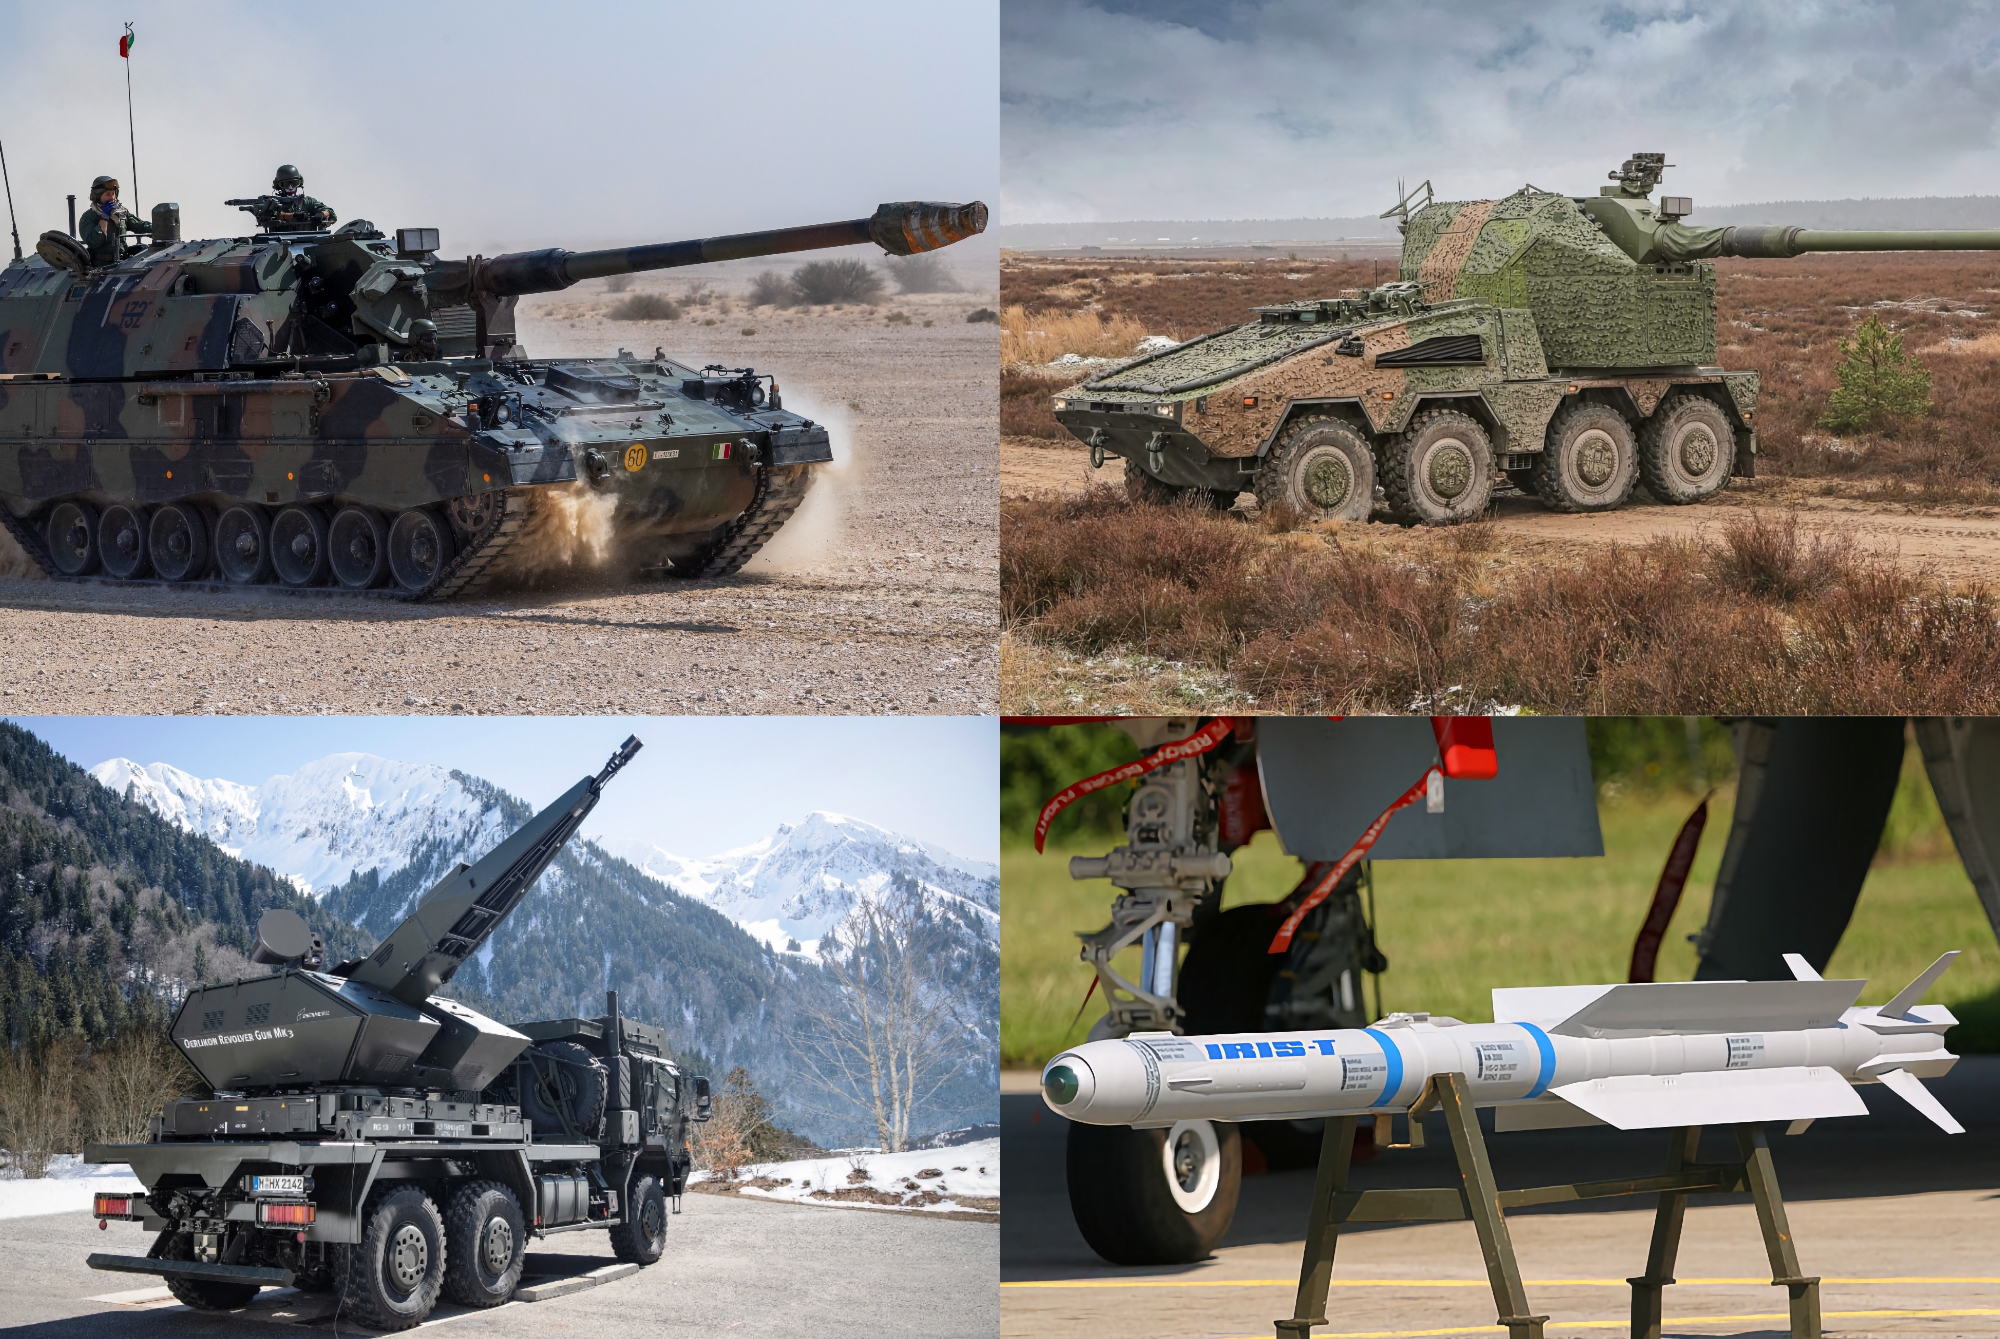 36 PzH 2000 artillerisystemer, RCH 155, 100 missiler til IRIS-T og 2 Skynex luftvernsystemer: Tyskland har avslørt detaljer om en ny militær hjelpepakke på 1,1 milliarder euro til AFU.